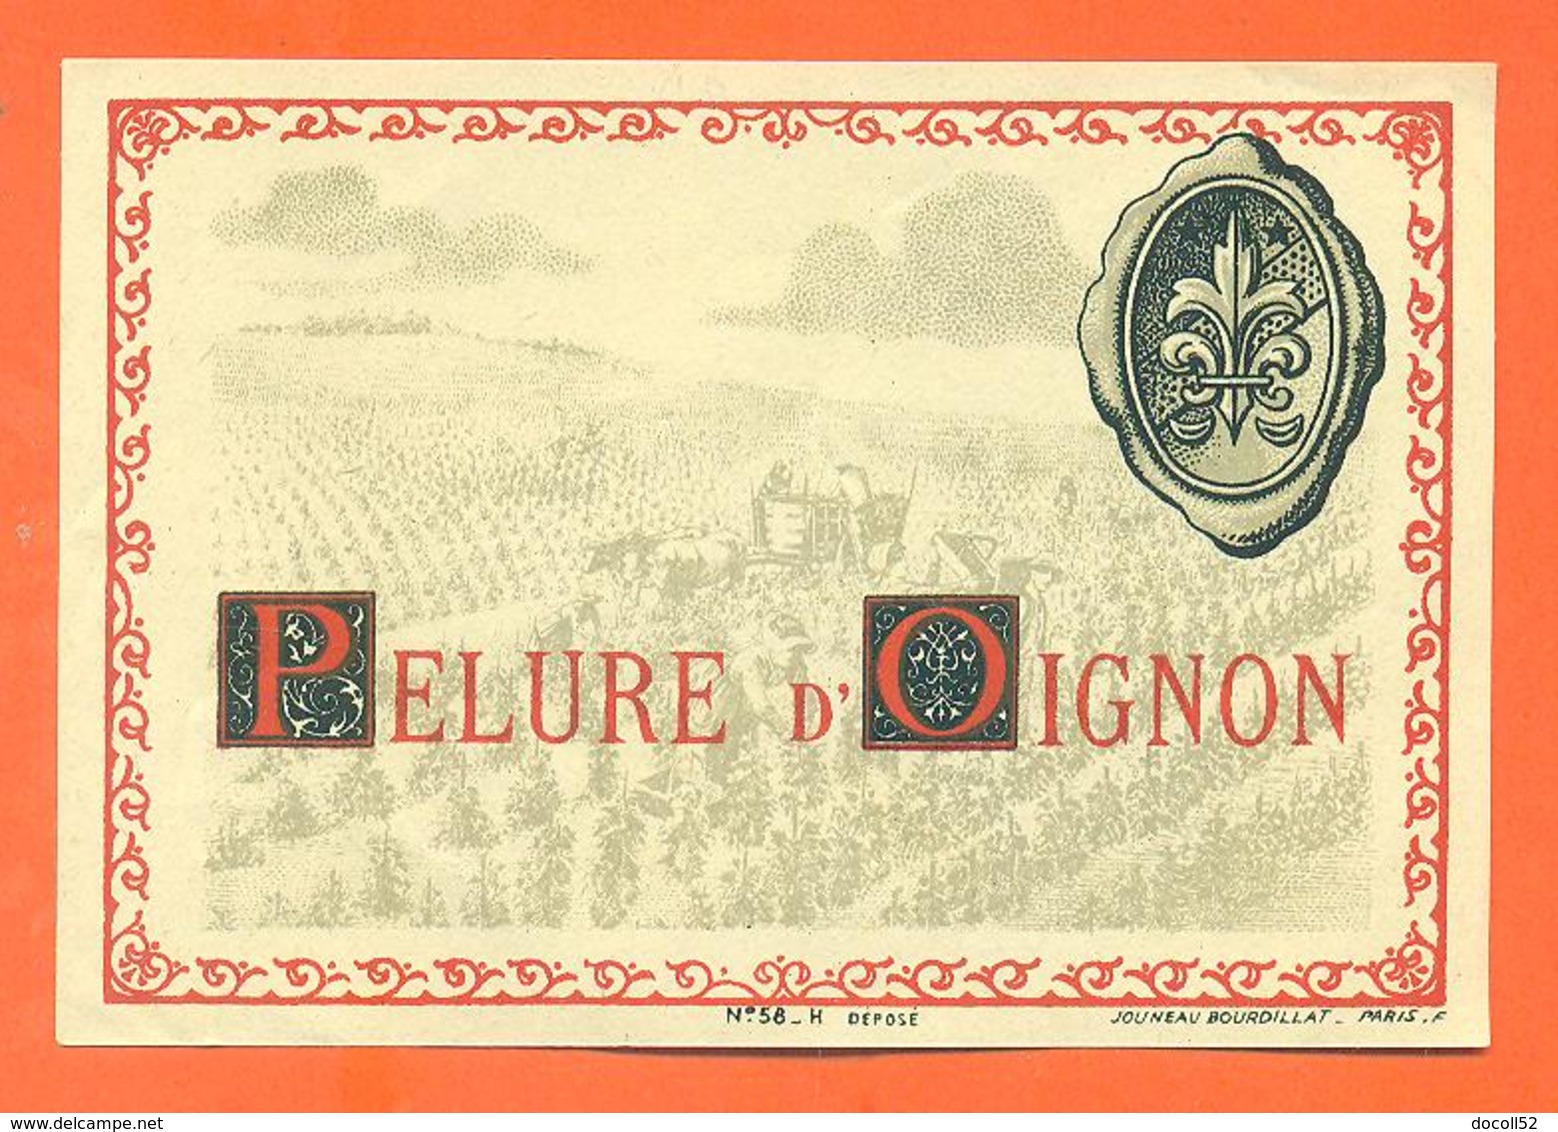 étiquette Ancienne Vin De Pelure D'oignon - 75 Cl - Pink Wines